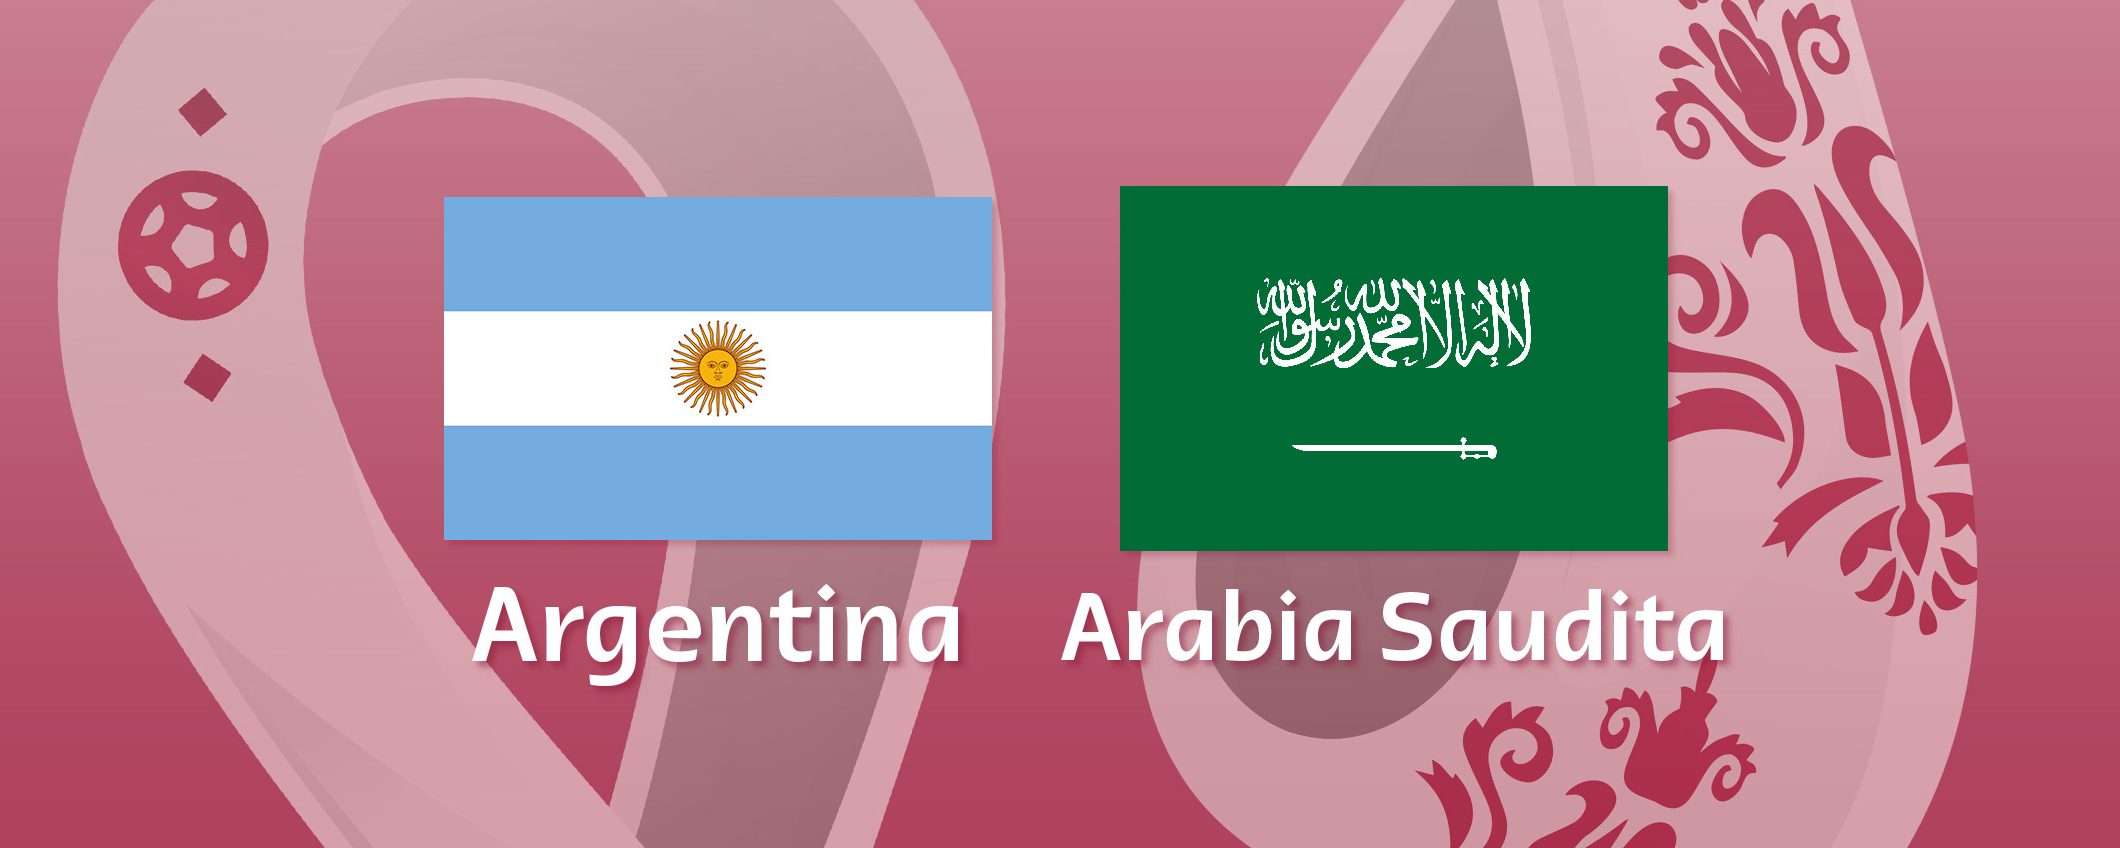 Come vedere Argentina-Arabia Saudita in streaming (Mondiali)